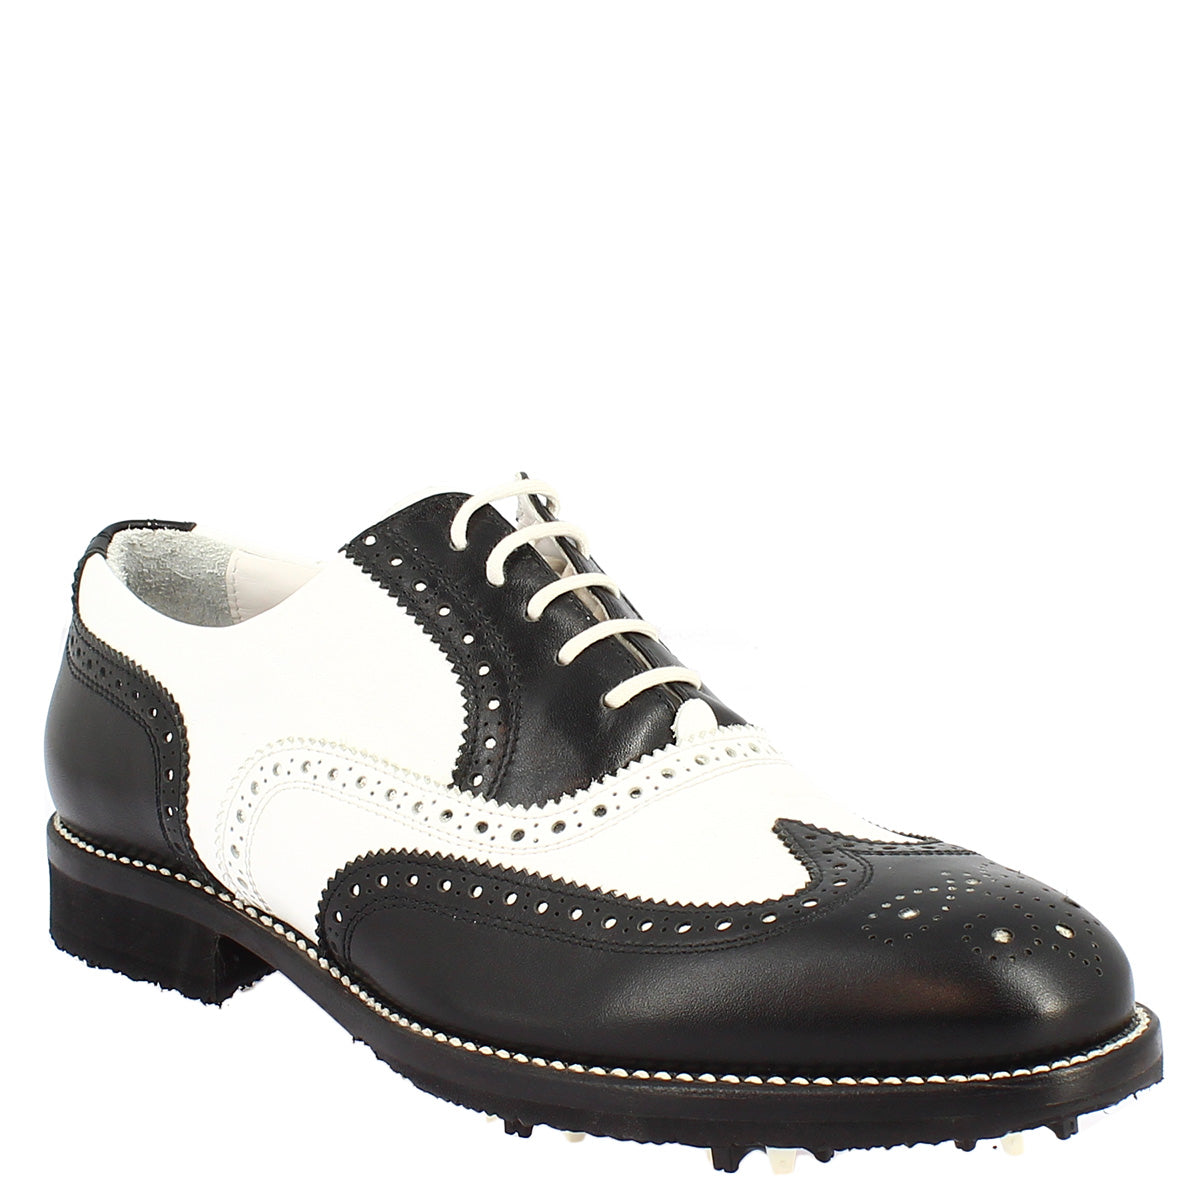 Chaussures de golf en cuir bicolore noir/blanc fabriquées à la main